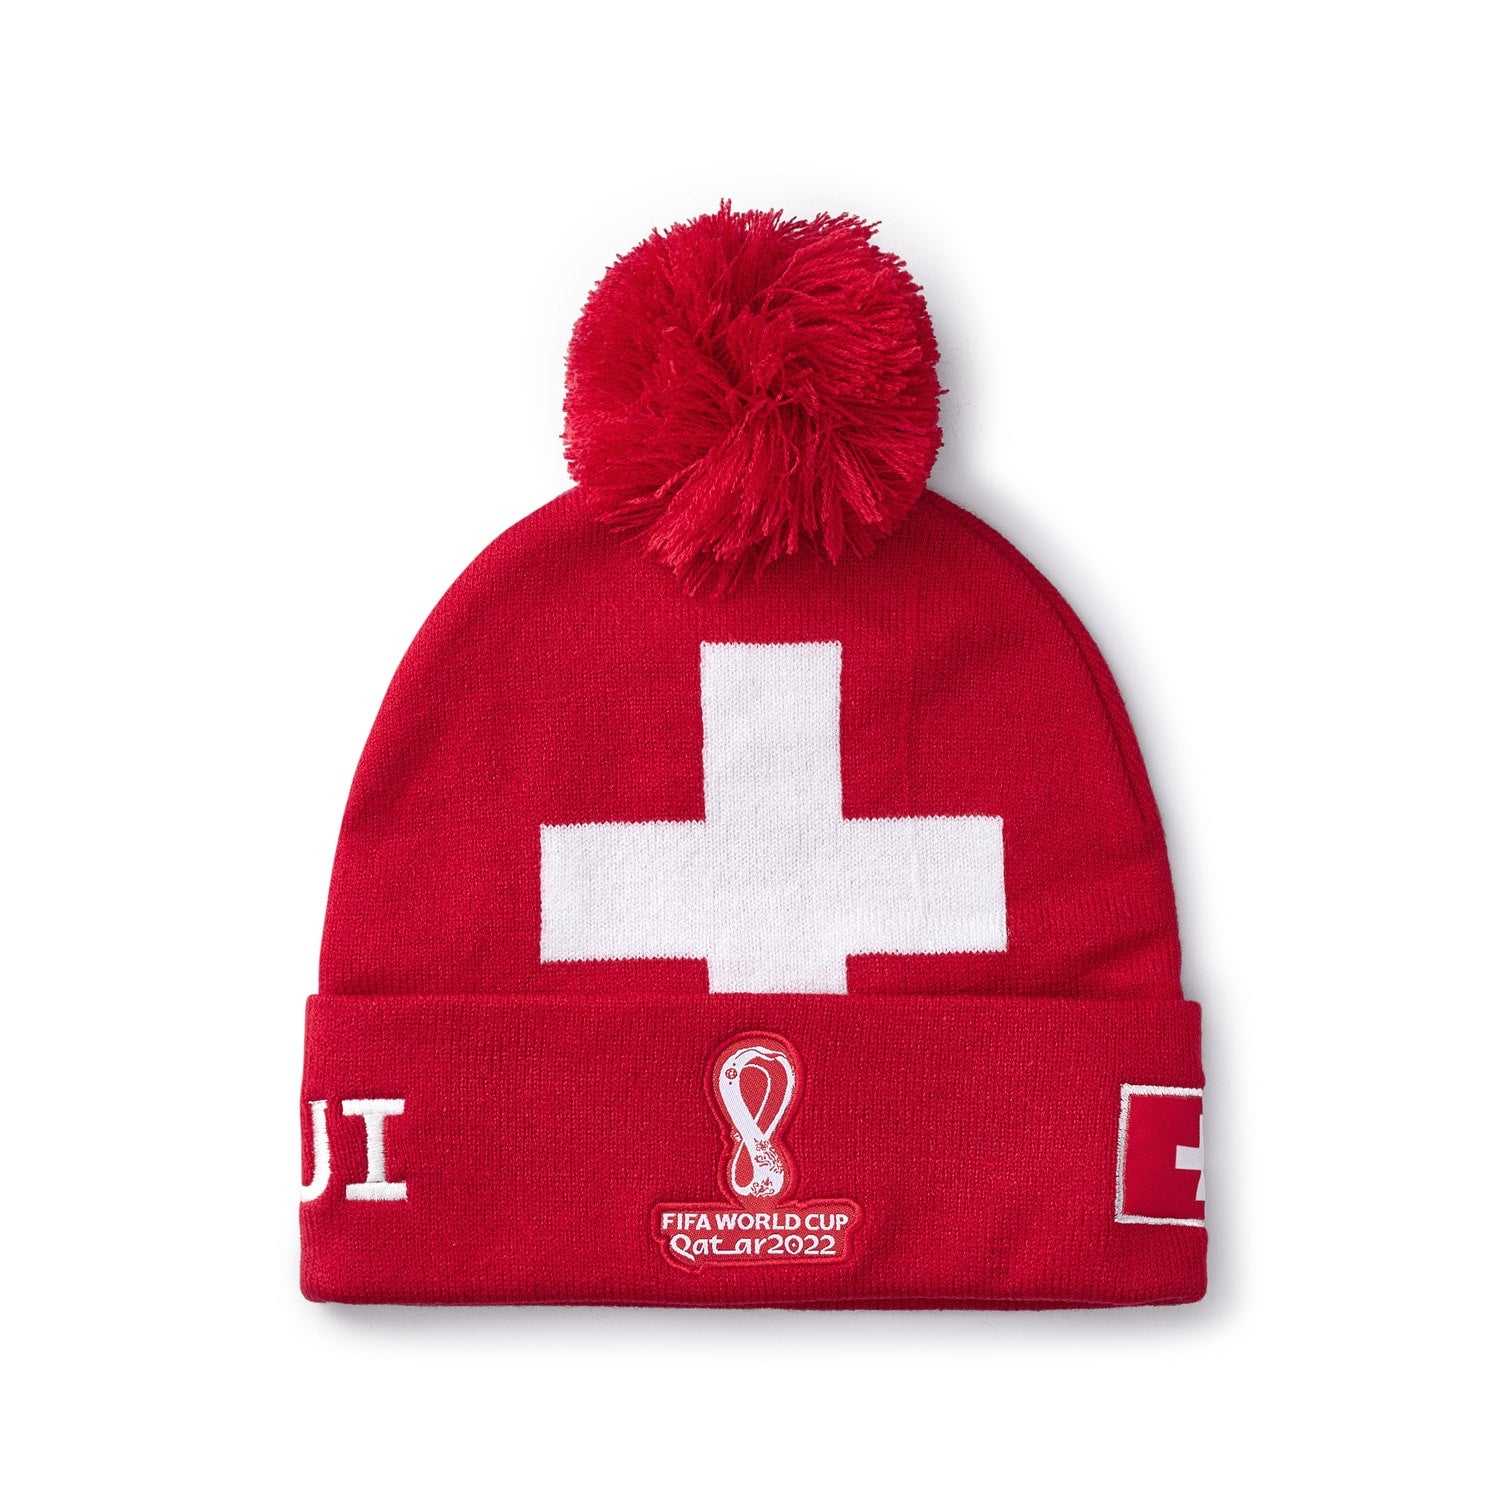 2022 World Cup Switzerland Red Hat - Mens